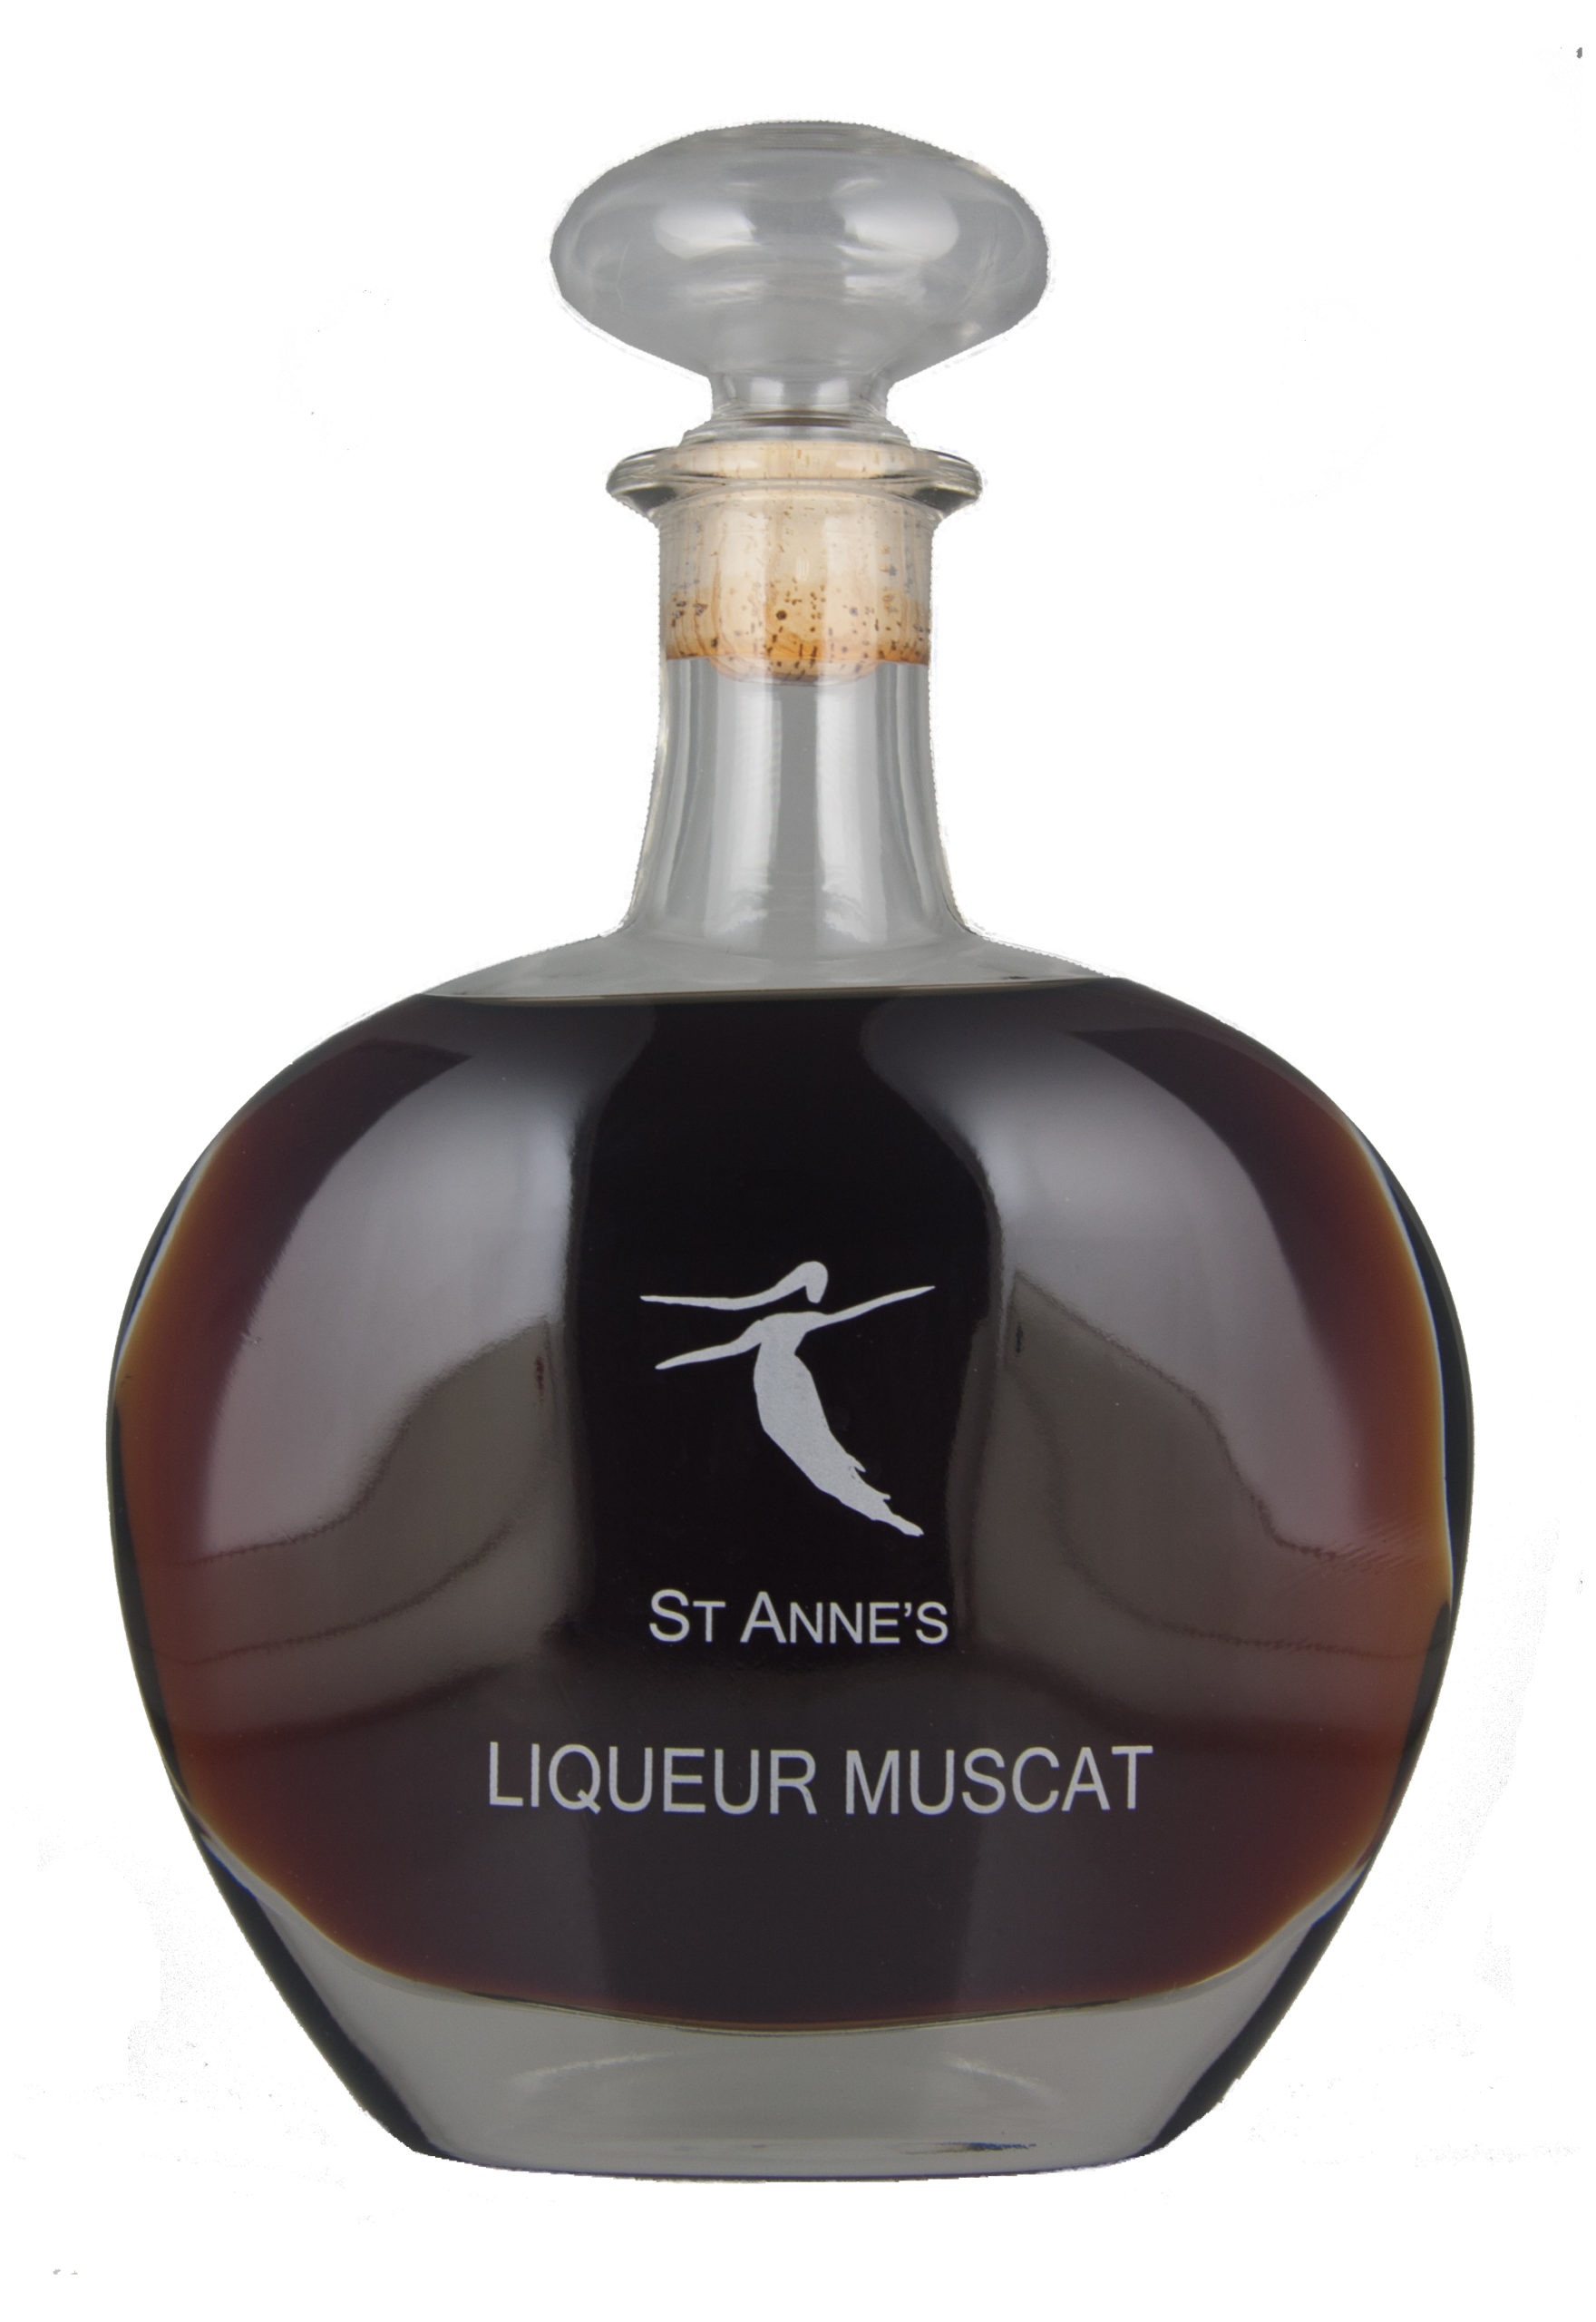 St Anne's Liqueur Muscat